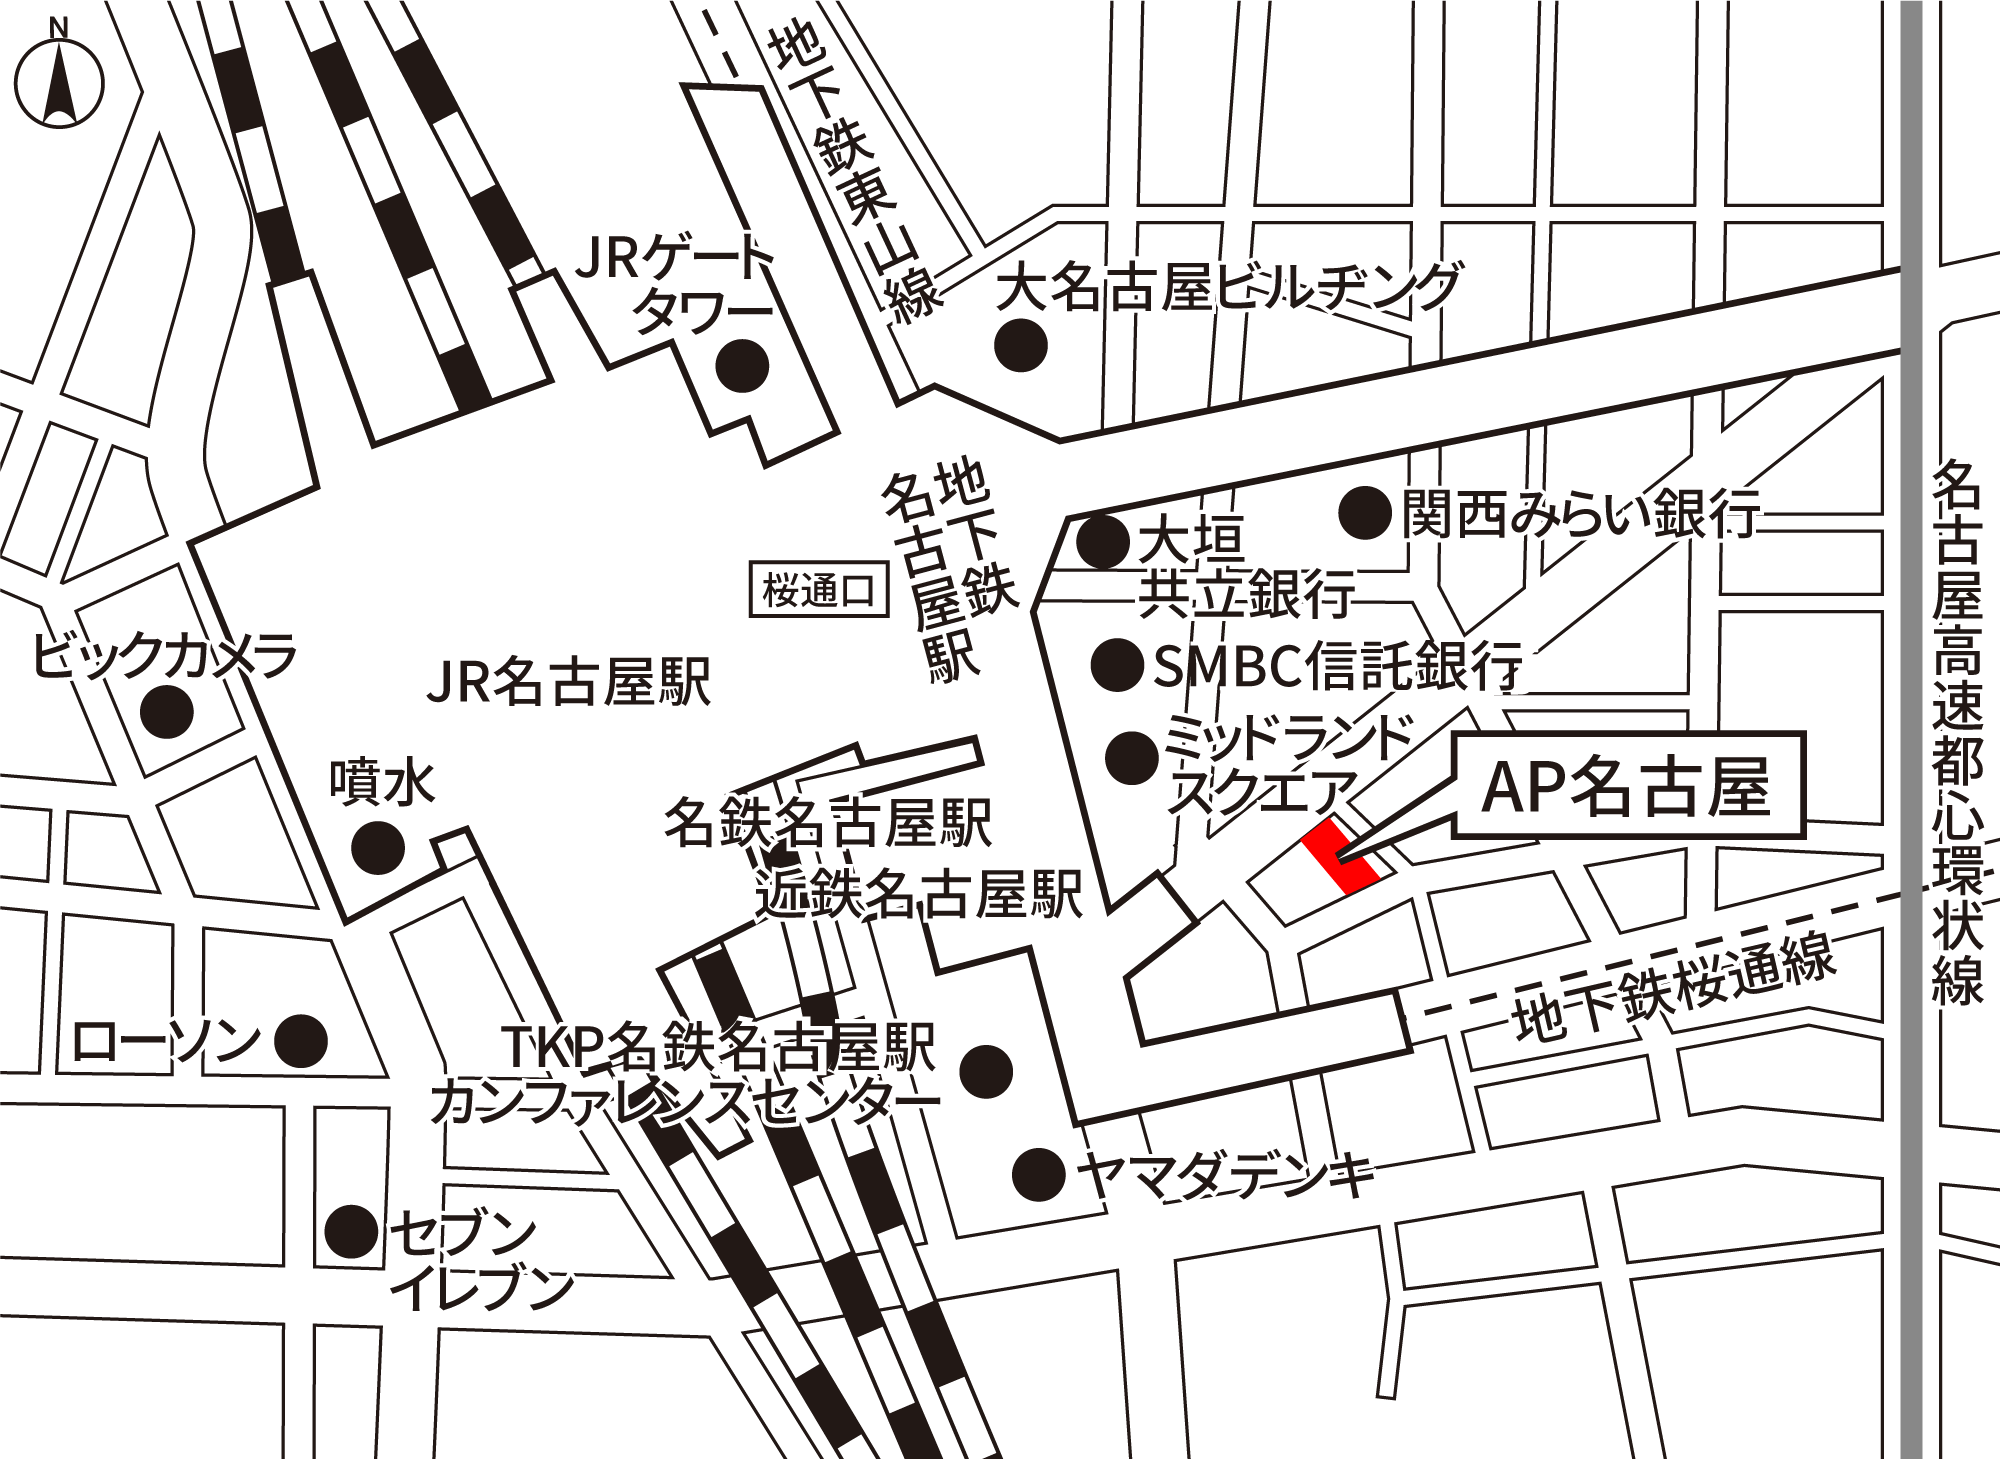 AP名古屋 地図